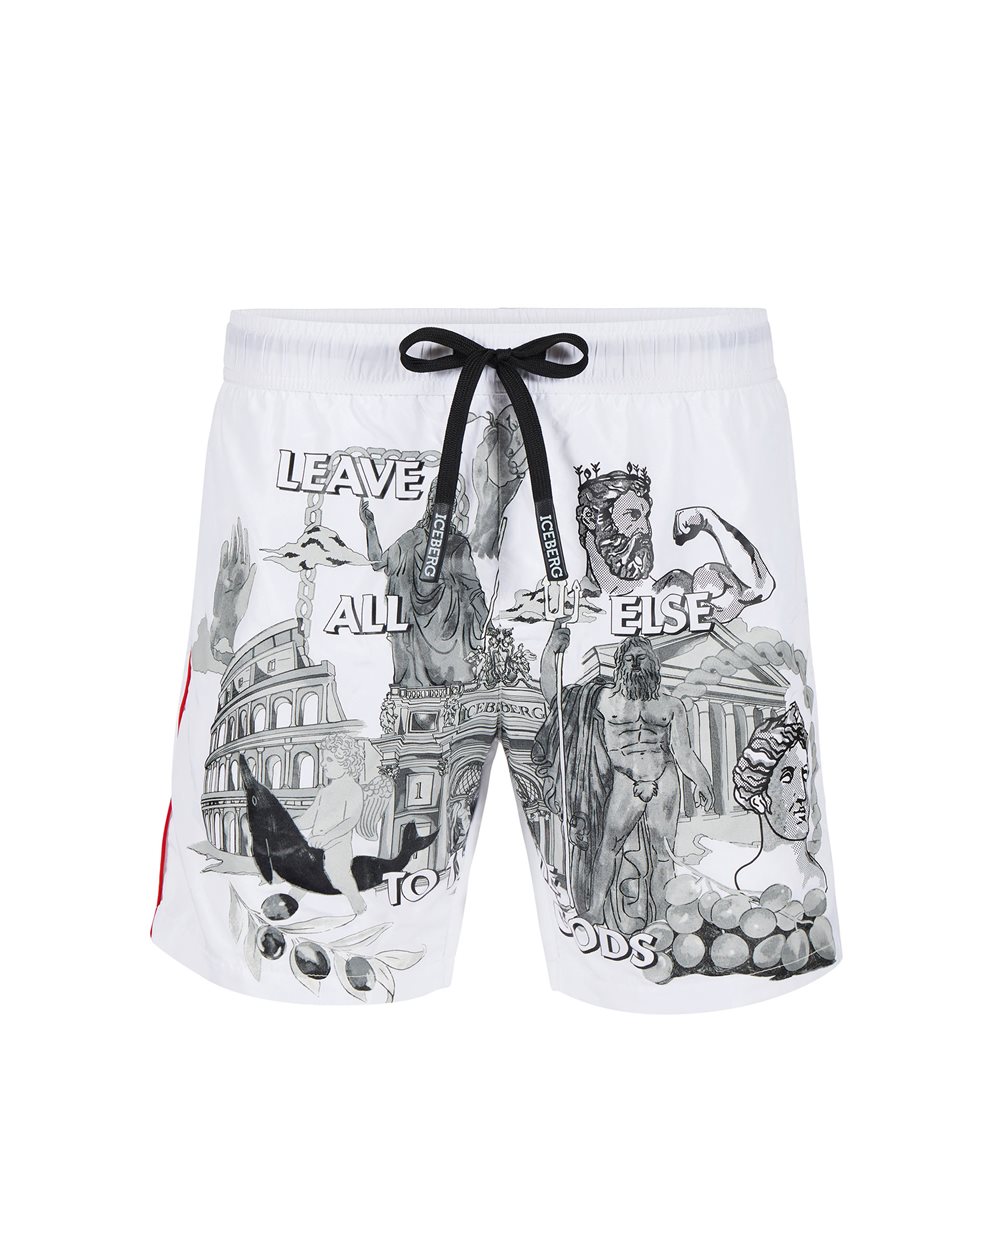 Swim trunks with logo - Beachwear | Iceberg - Official Website